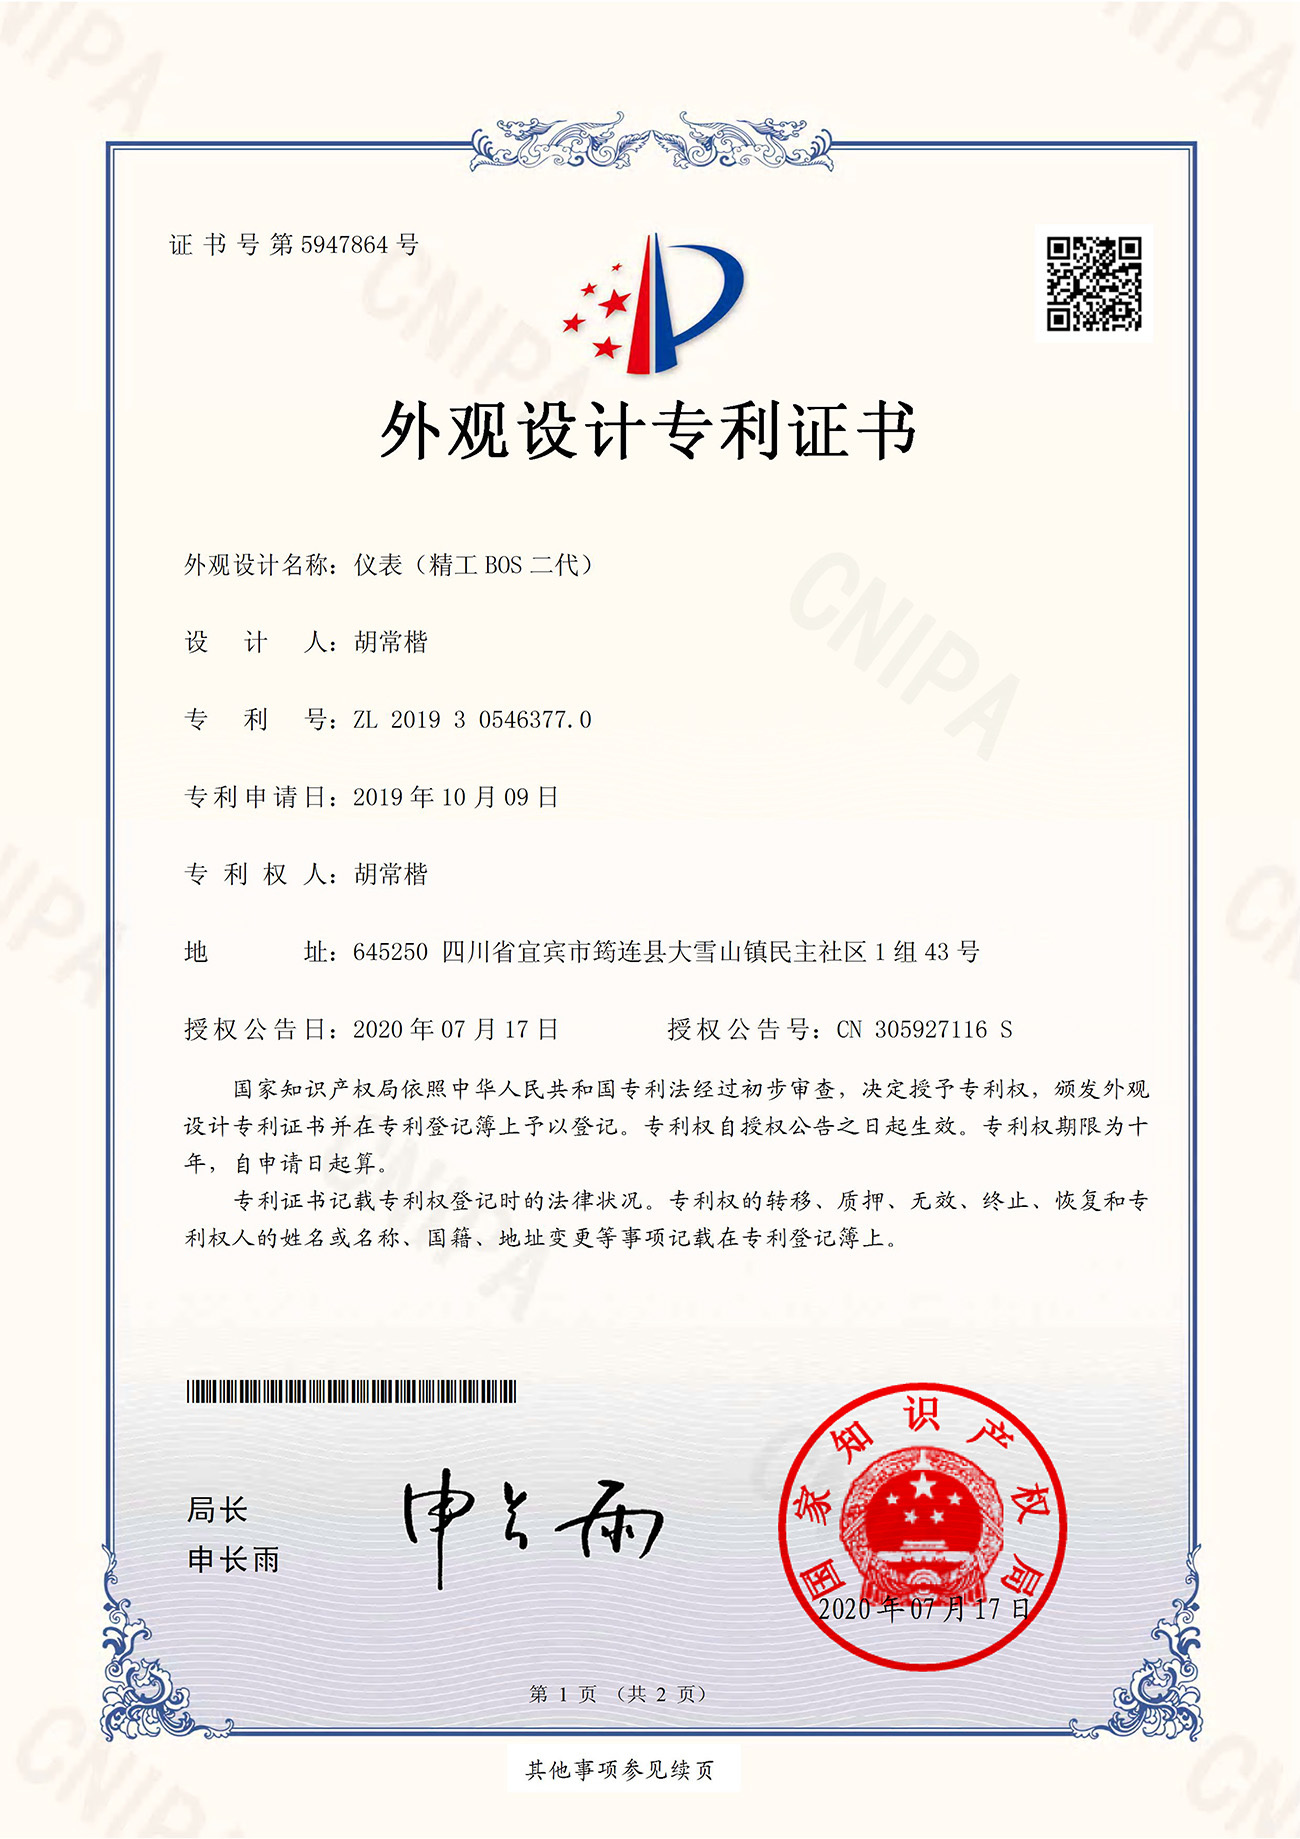 Certificate-Hu Changkai Instrument (Seiko BOS II)